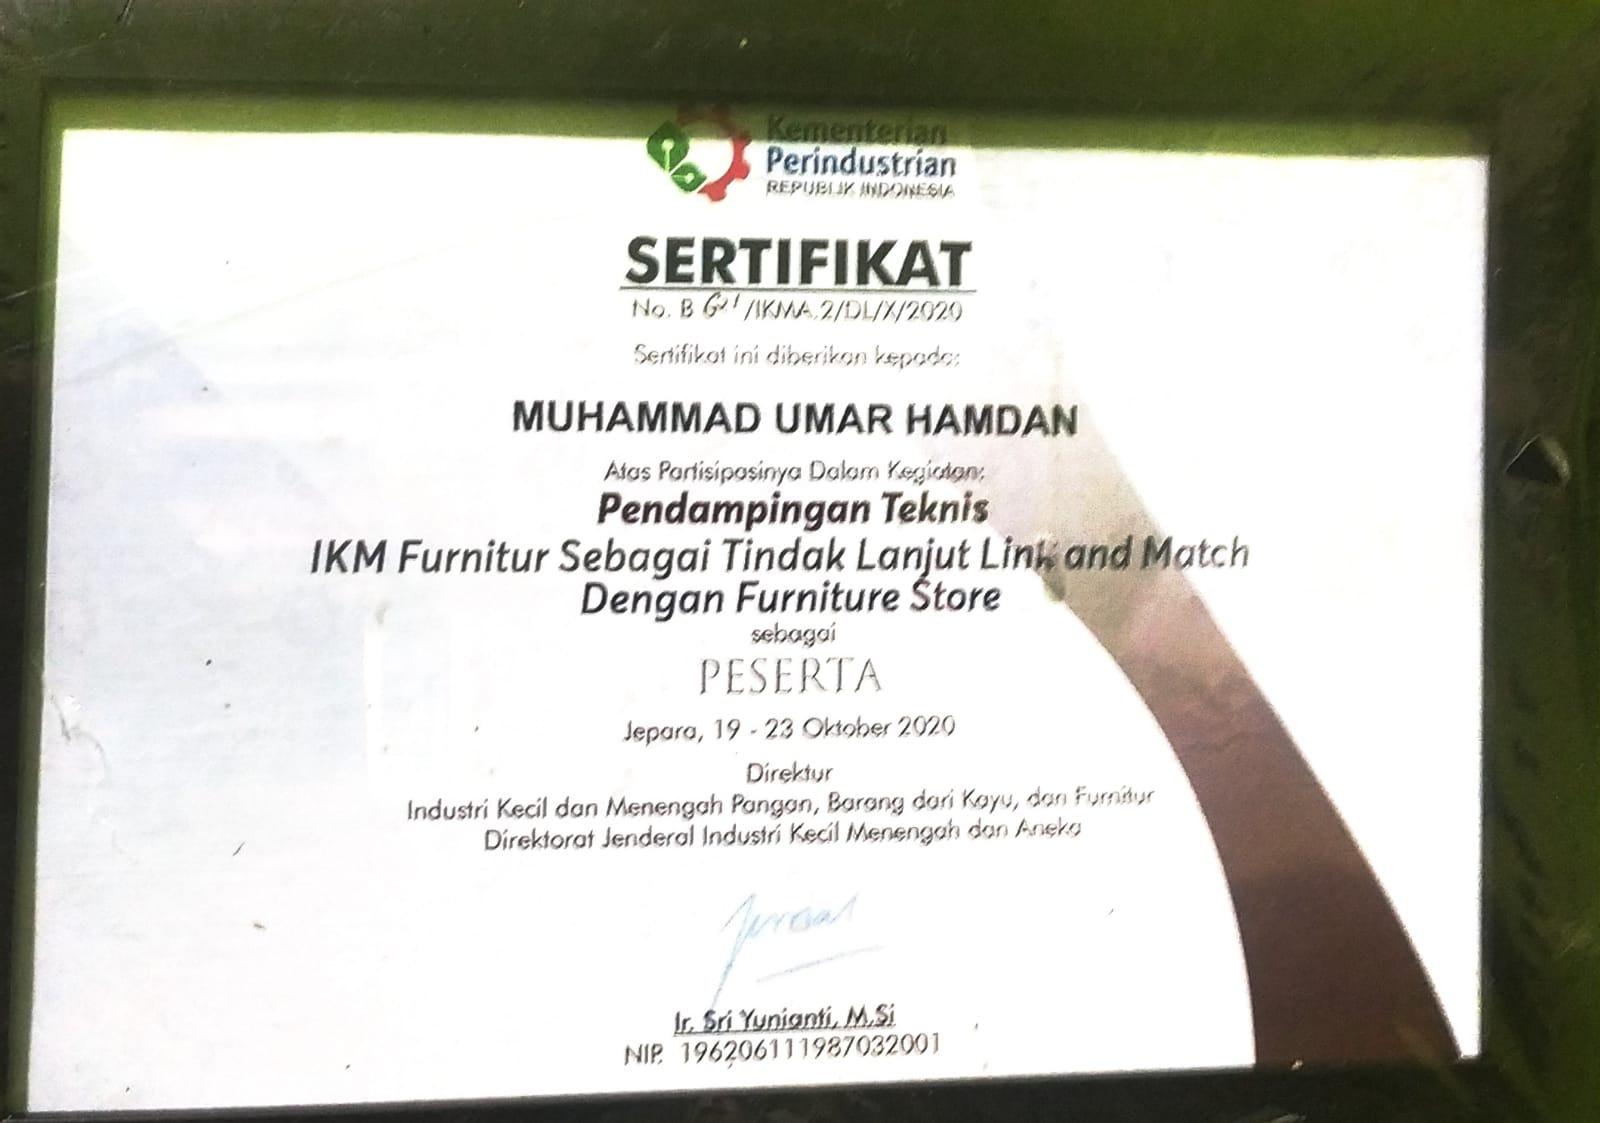 Pendampingan Tekhnis IKM Furniture sebagai Tindak Lanjut Link & Match Dengan Furniture Store_Kementrian Perindustrian Republik Indonesia